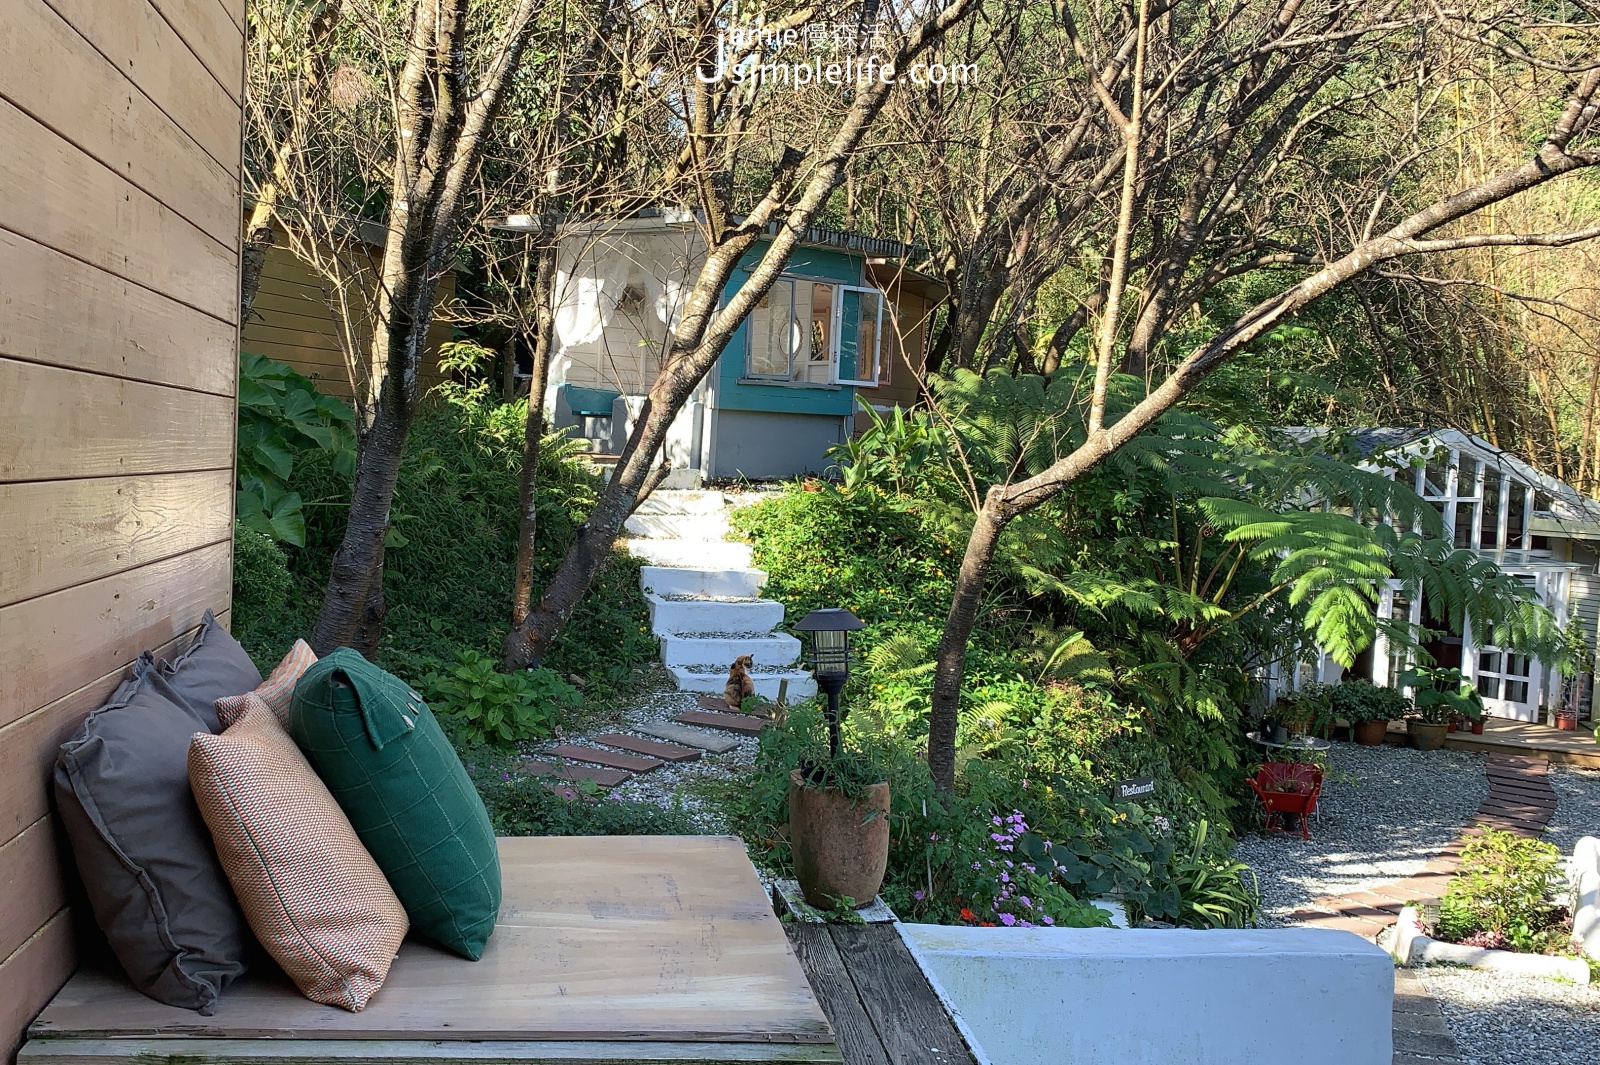 陽明山蒙馬特影像咖啡 裝飾偏甜的用餐環境與氛圍 黃色小屋發呆座位